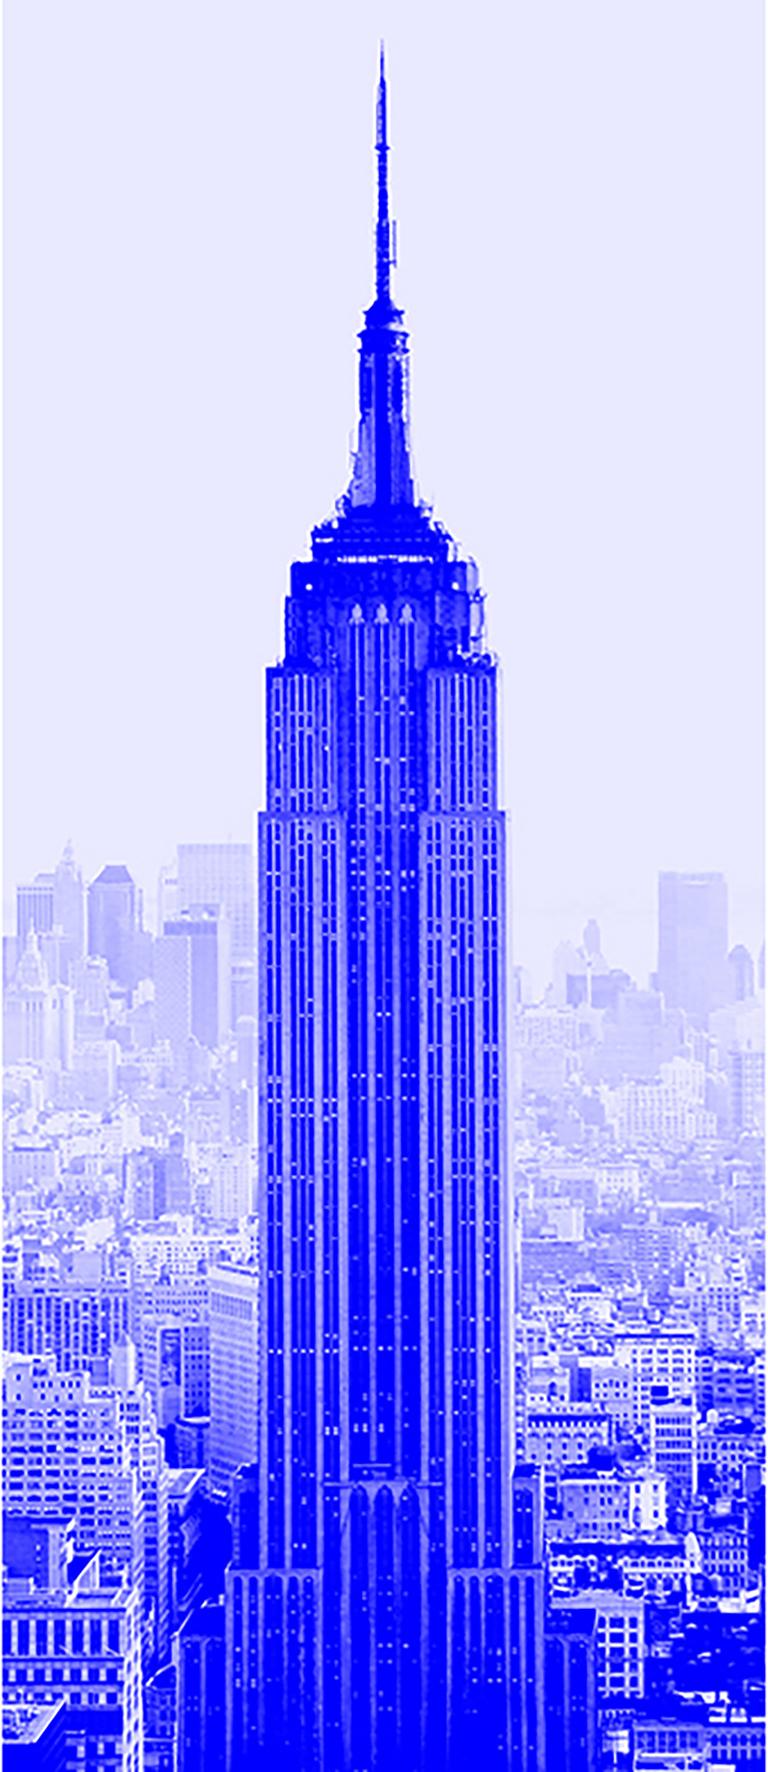 Claire Clarkson Color Photograph - "Blue Empire" Empire State Building Photograph Art Deco